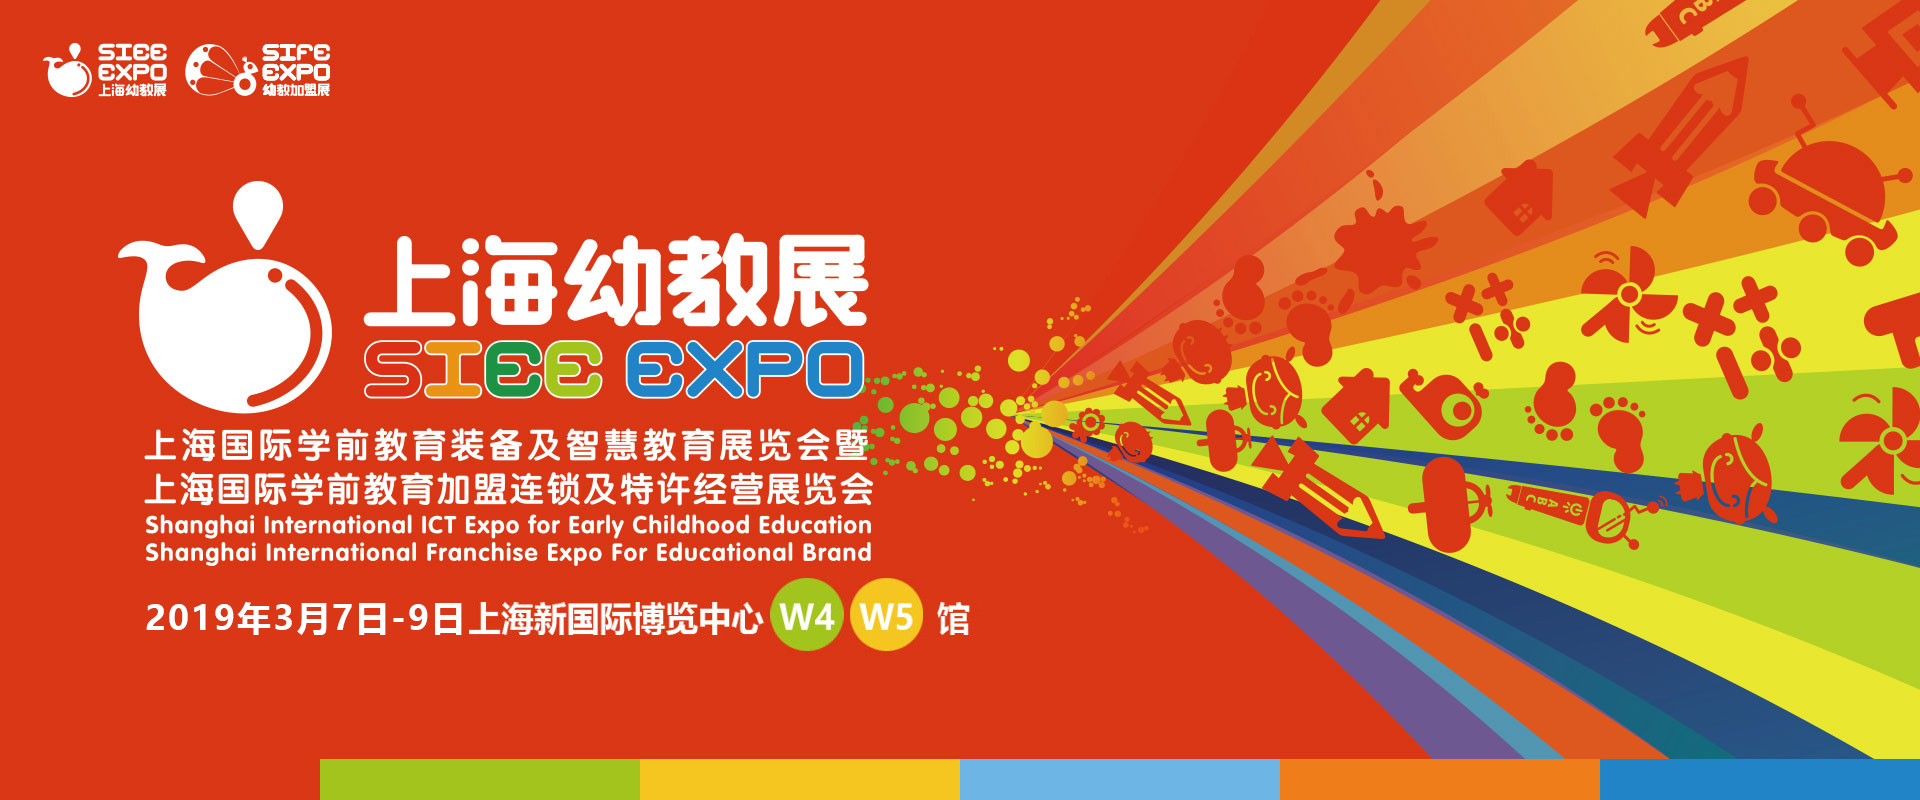 上海国际学前教育加盟连锁及特许经营展览会-91teams